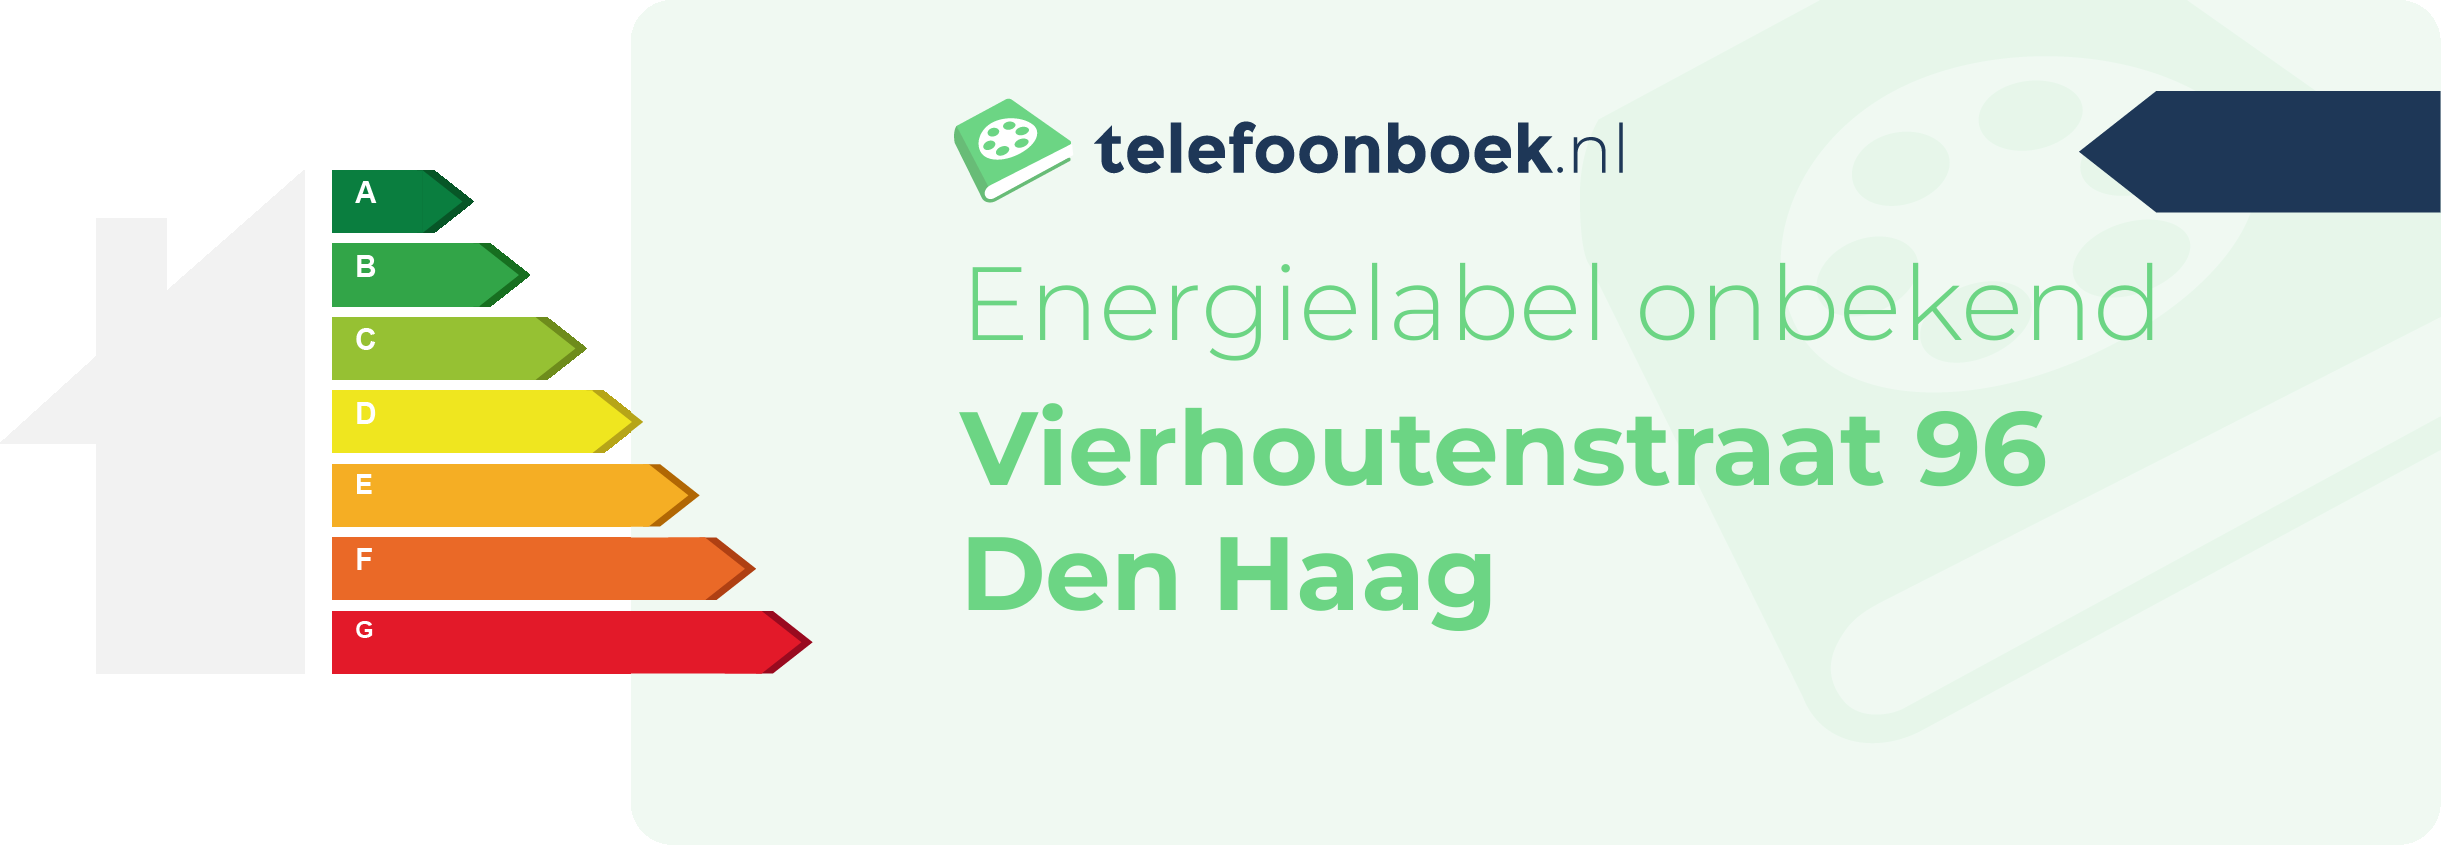 Energielabel Vierhoutenstraat 96 Den Haag